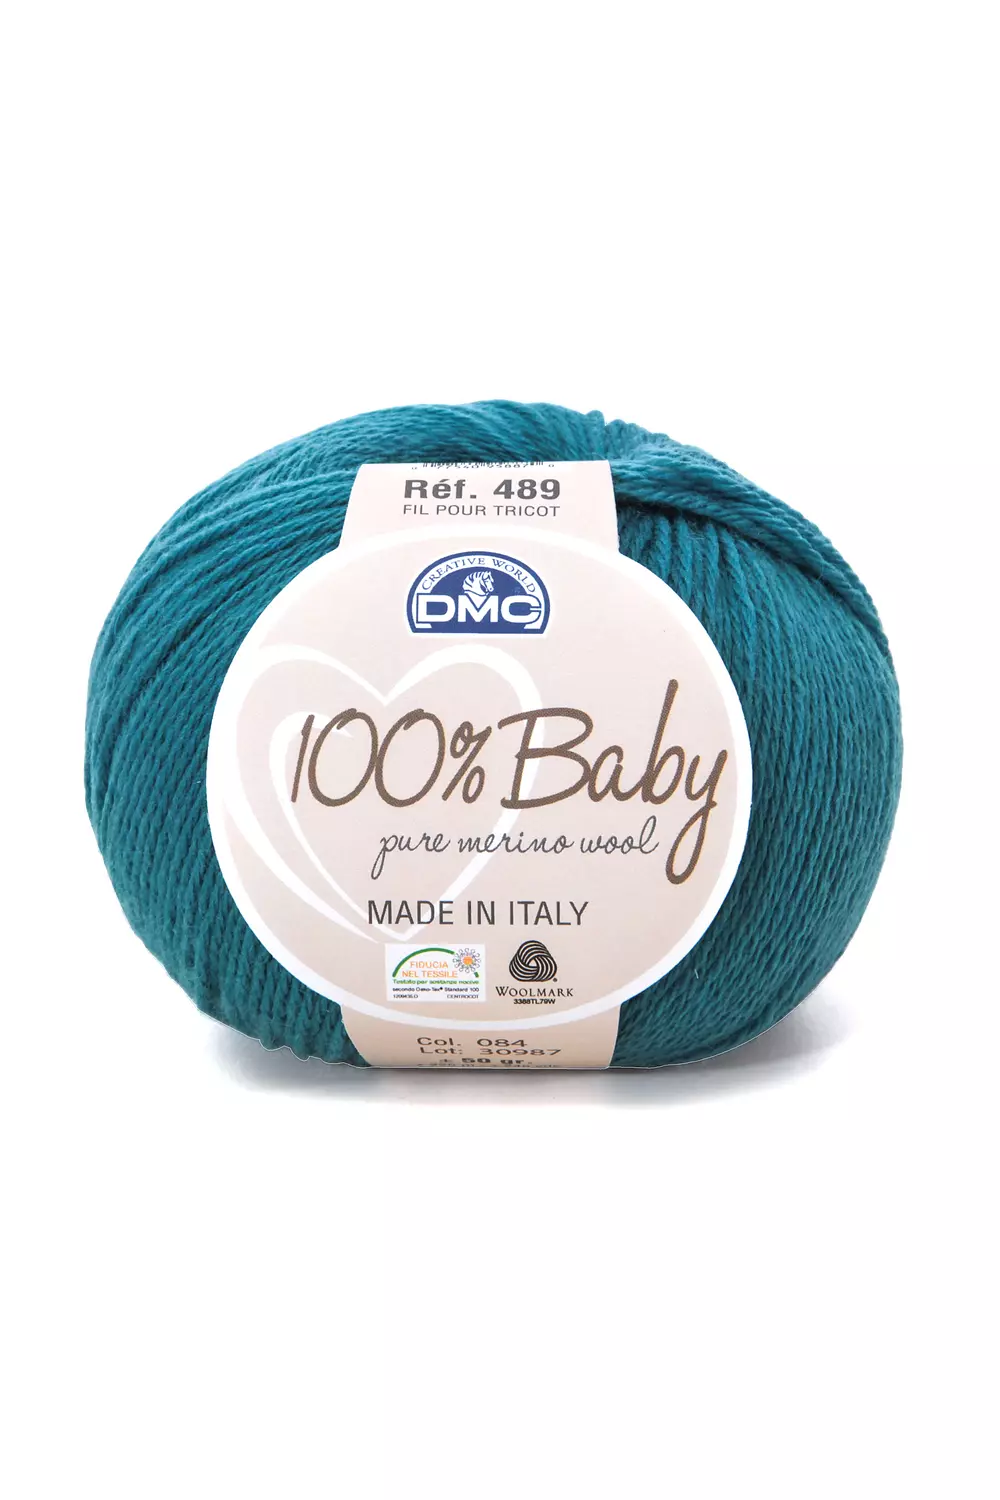 100% pure merino wool yarn for